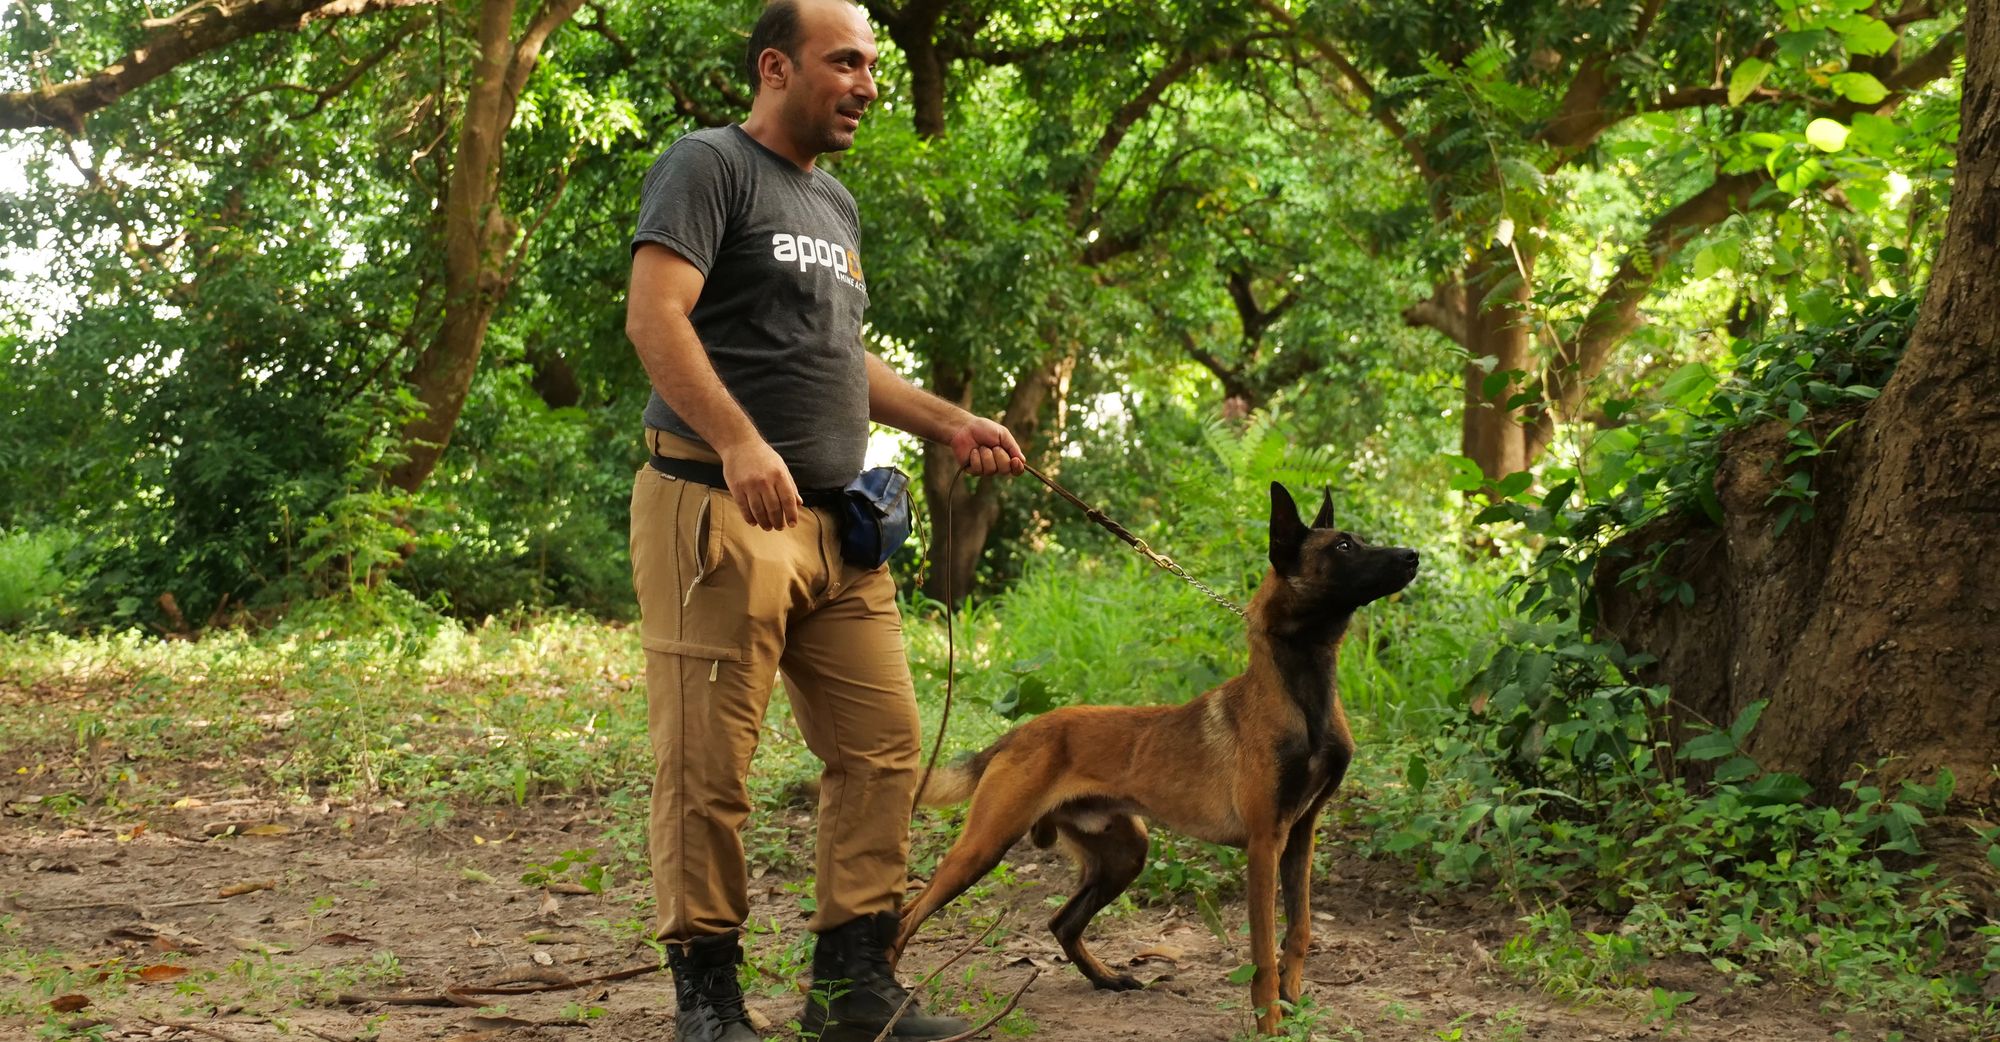 Ein Entminungsexperte führ einen Hund an der Leine, der zum Aufspüren von Minen eingesetzt wird.